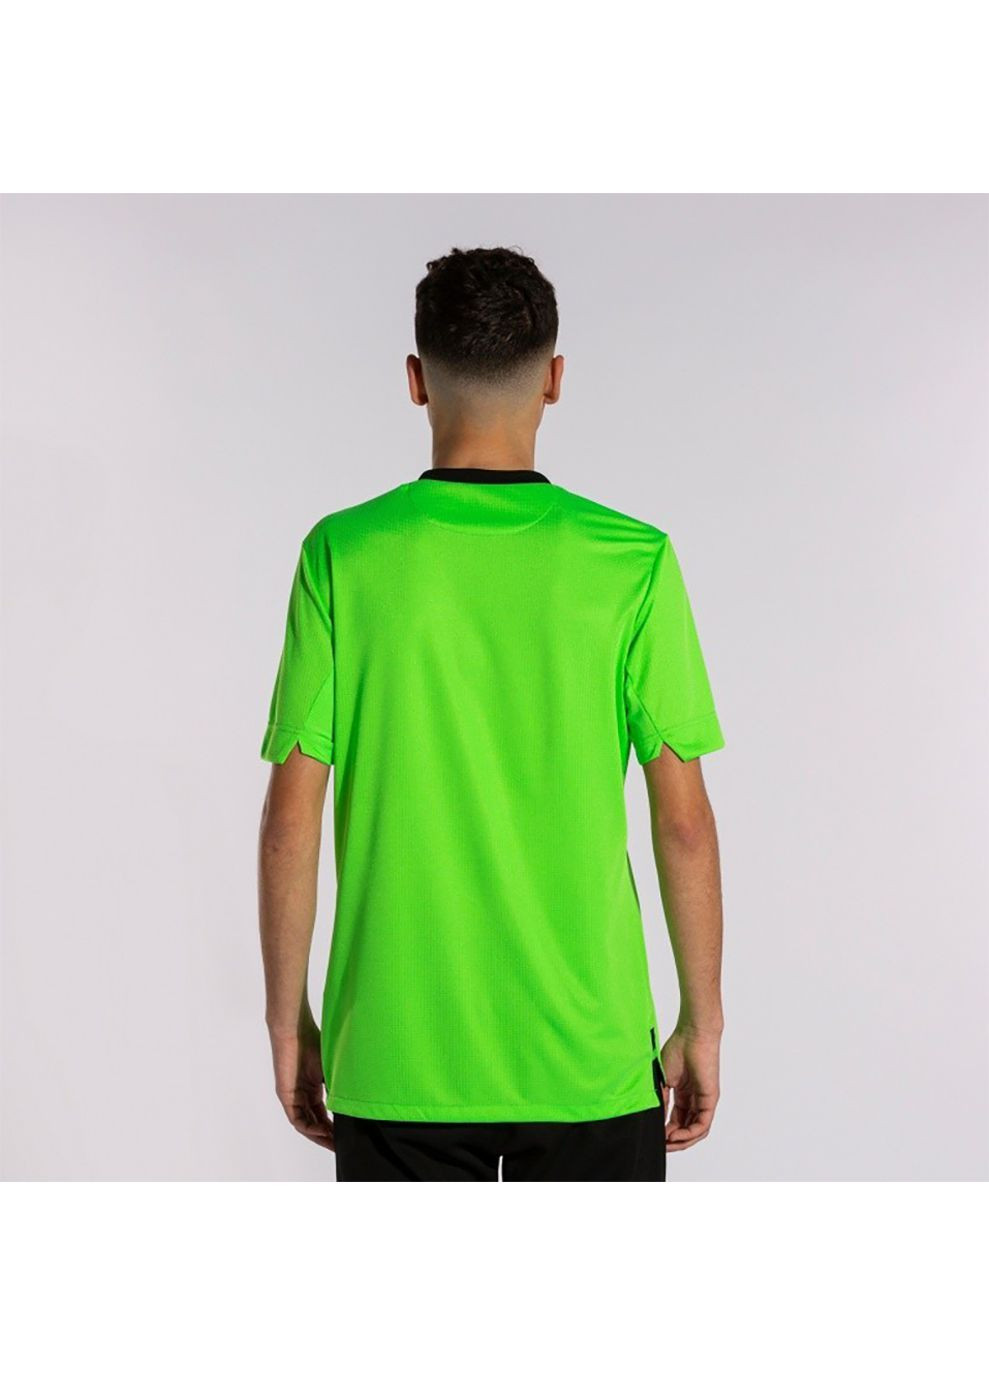 Комбинированная футболка gold iv short sleeve t-shirt fluor green black зеленый,черный Joma